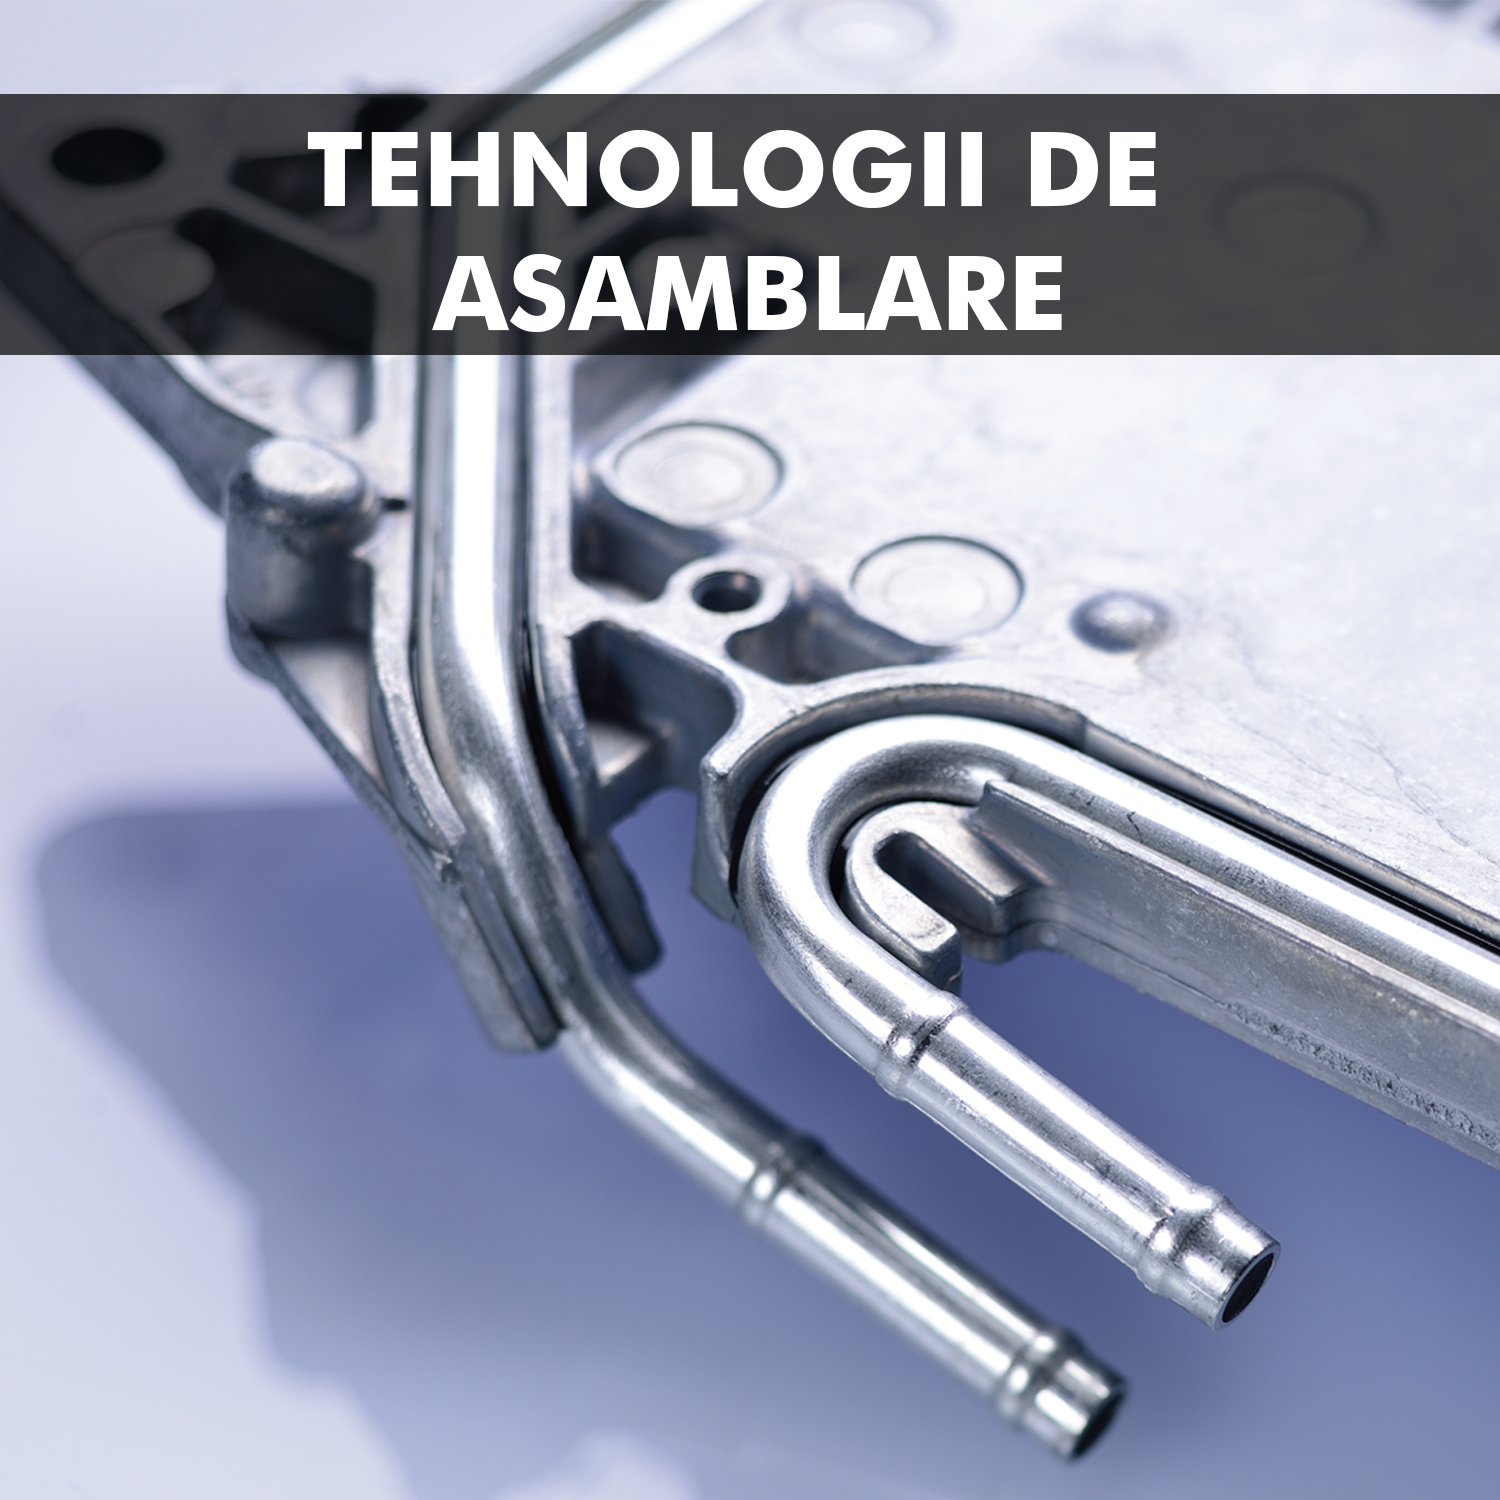 Tehnologii de asamblare: Etapele procesului în amonte și în aval în combinație cu tehnologiile noastre.